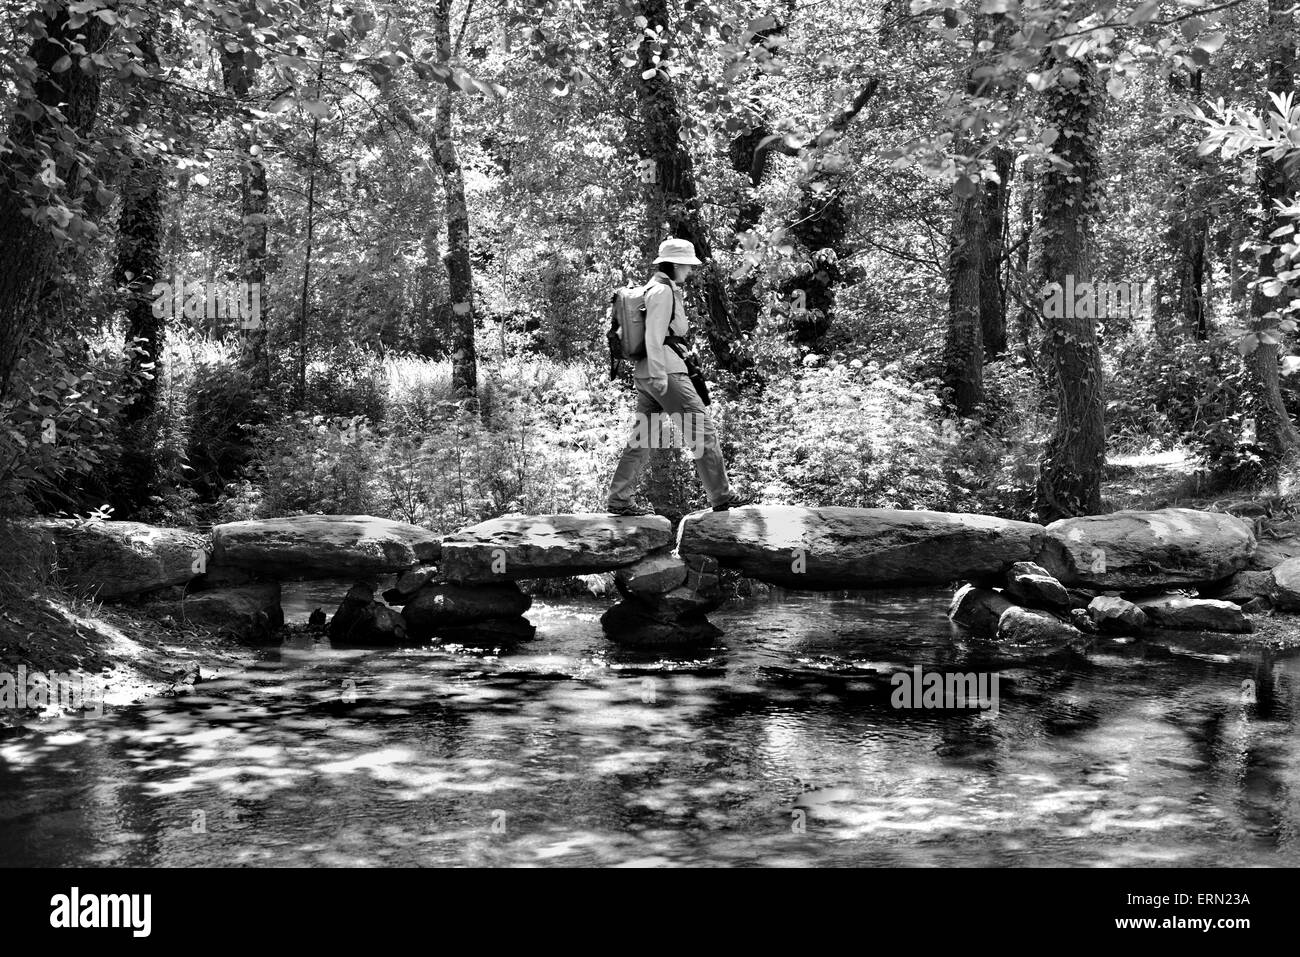 Spanien, Jakobsweg: Pilger überqueren die Passadeira de Catasol in den frischen Wäldern Galiciens in schwarz / weiß-version Stockfoto